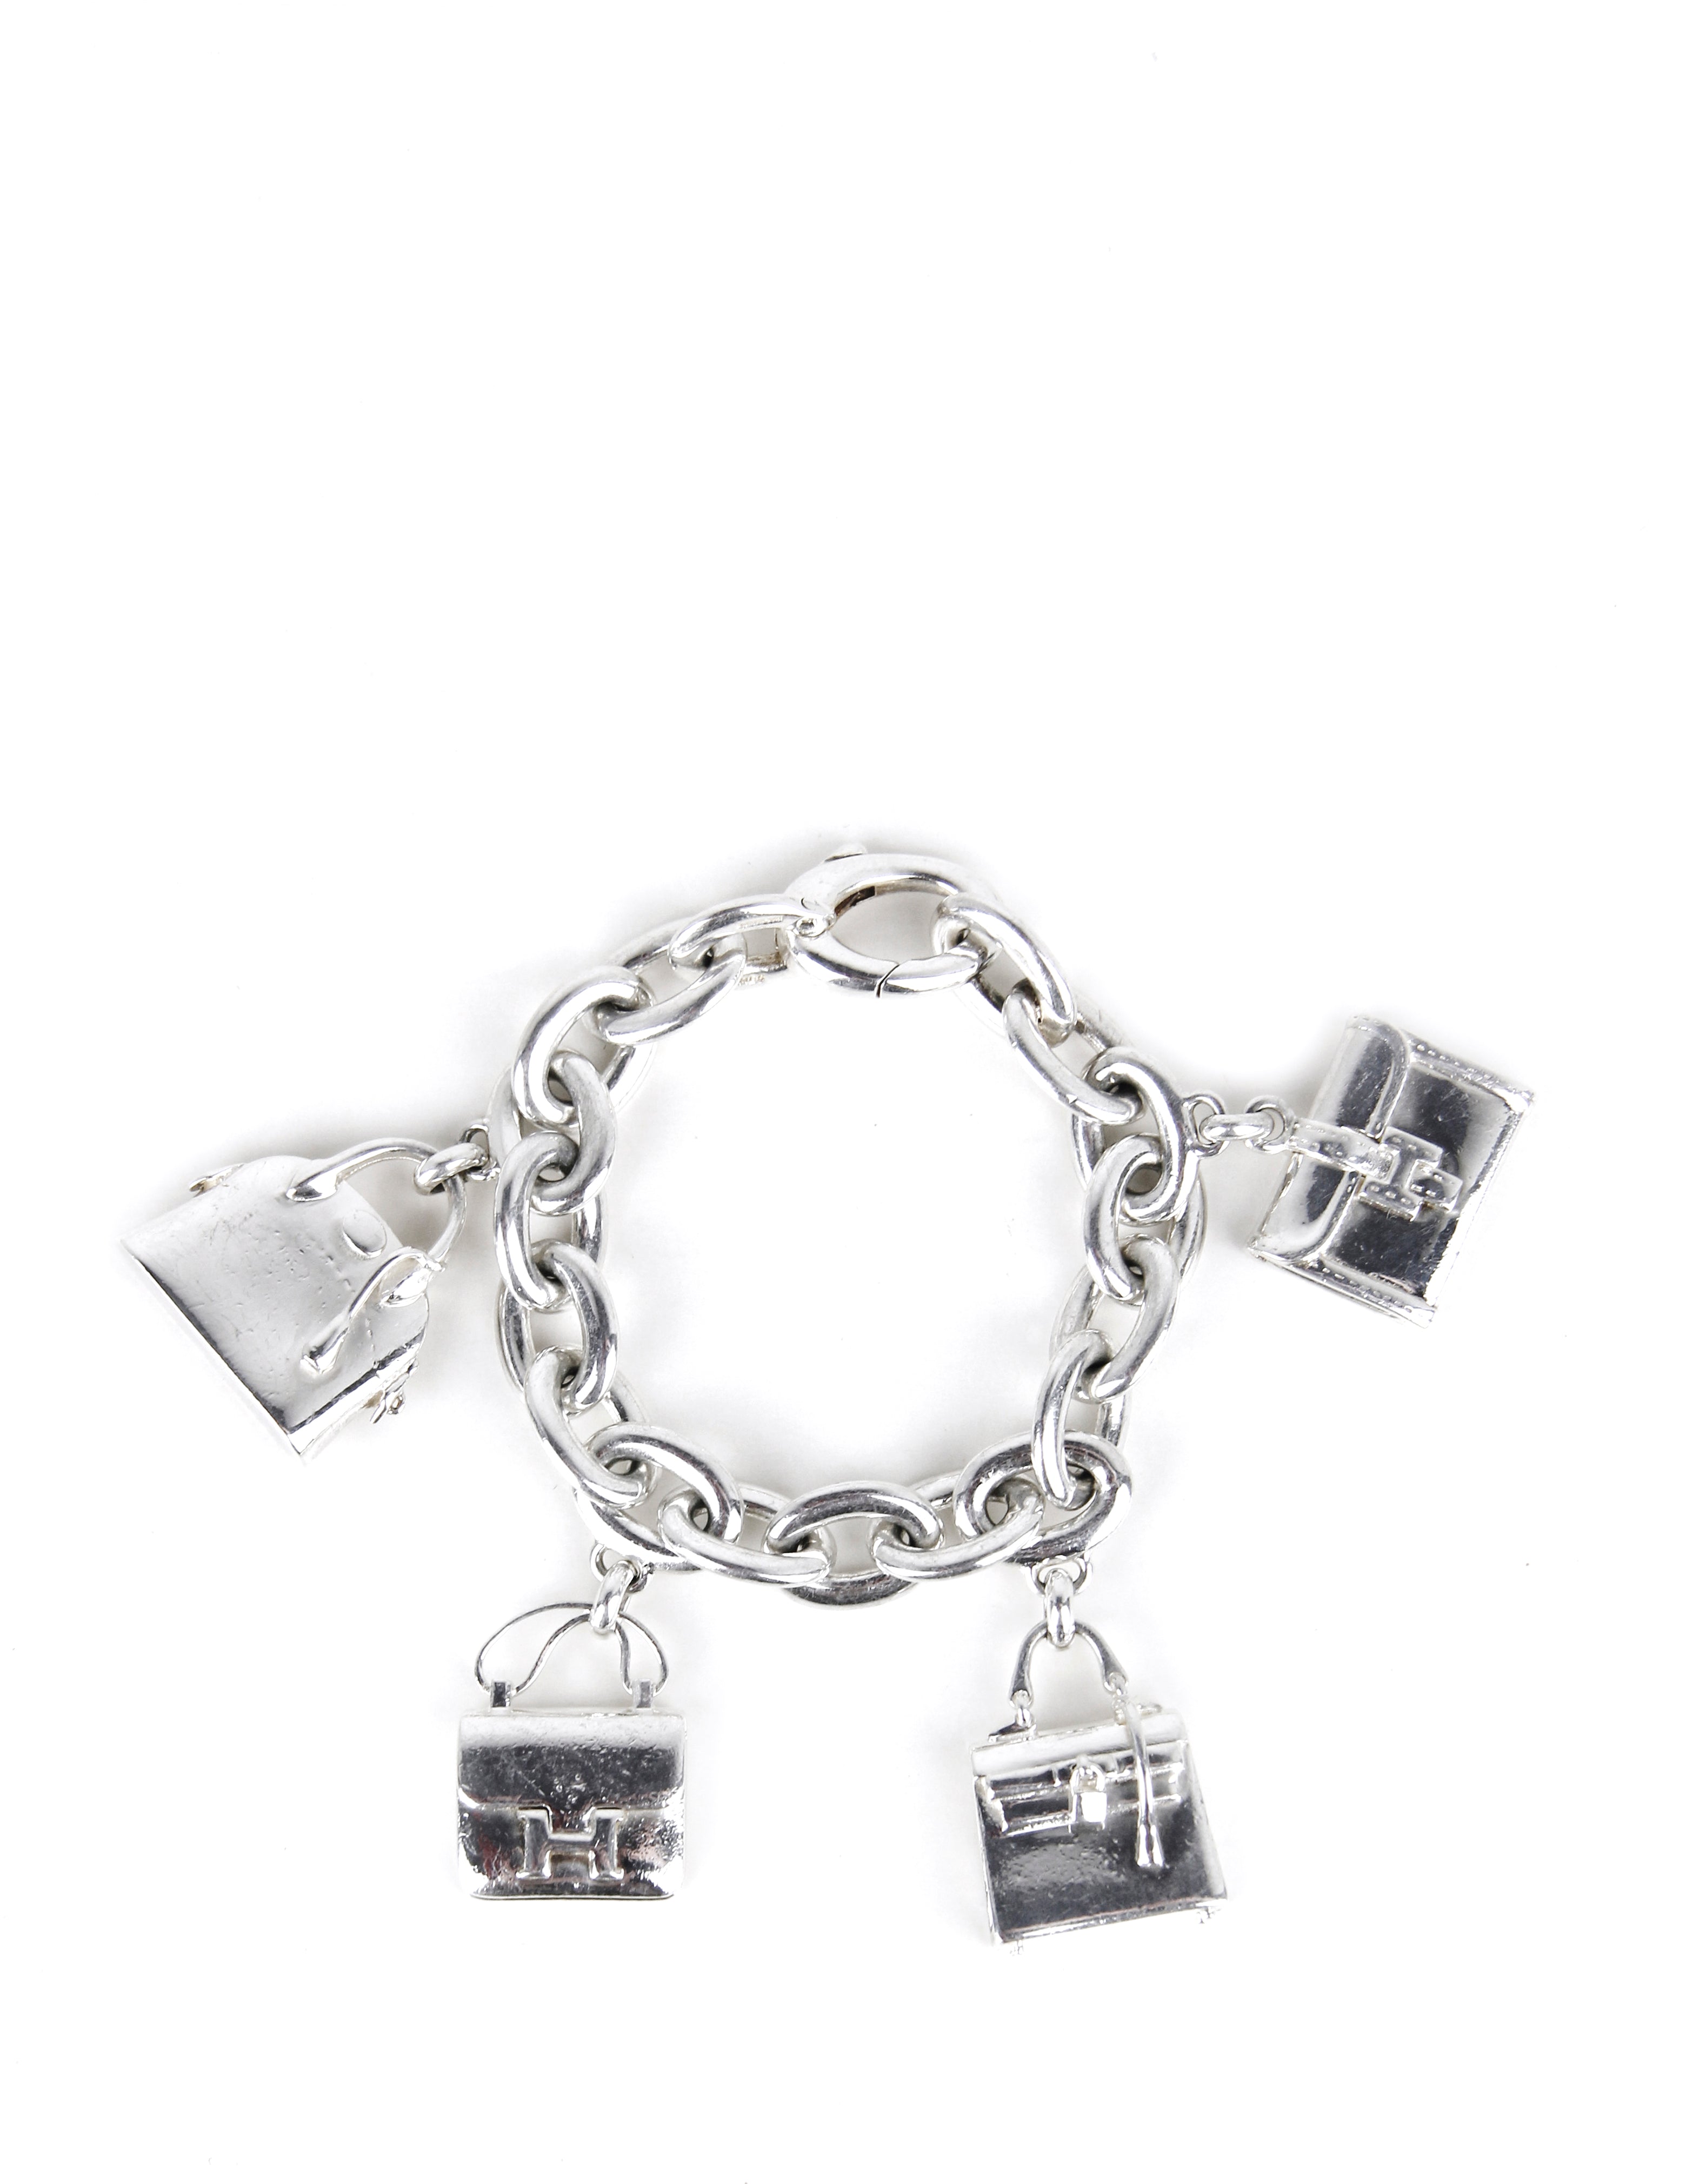 Hermes Sterling Silver Bag Charm Bracelet, 1stdibs.com